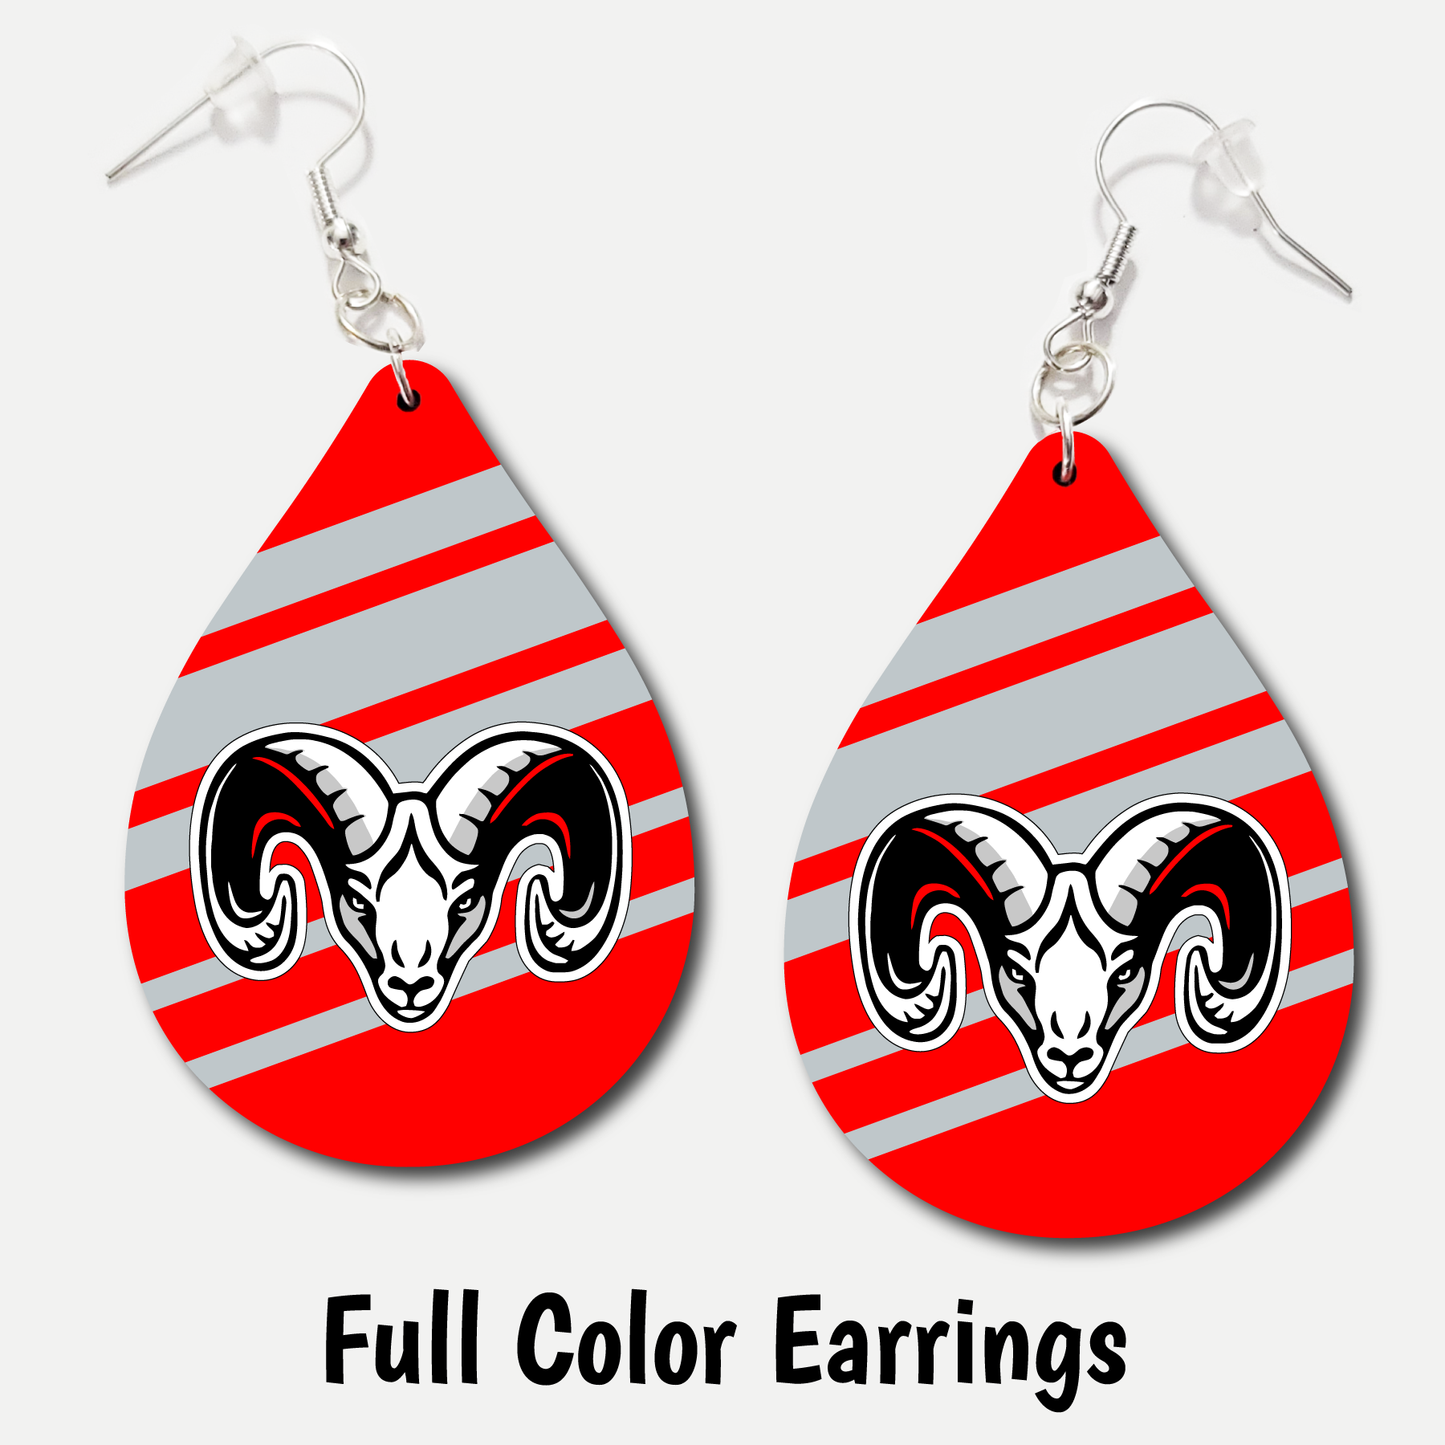 Highland Rams - Full Color Earrings